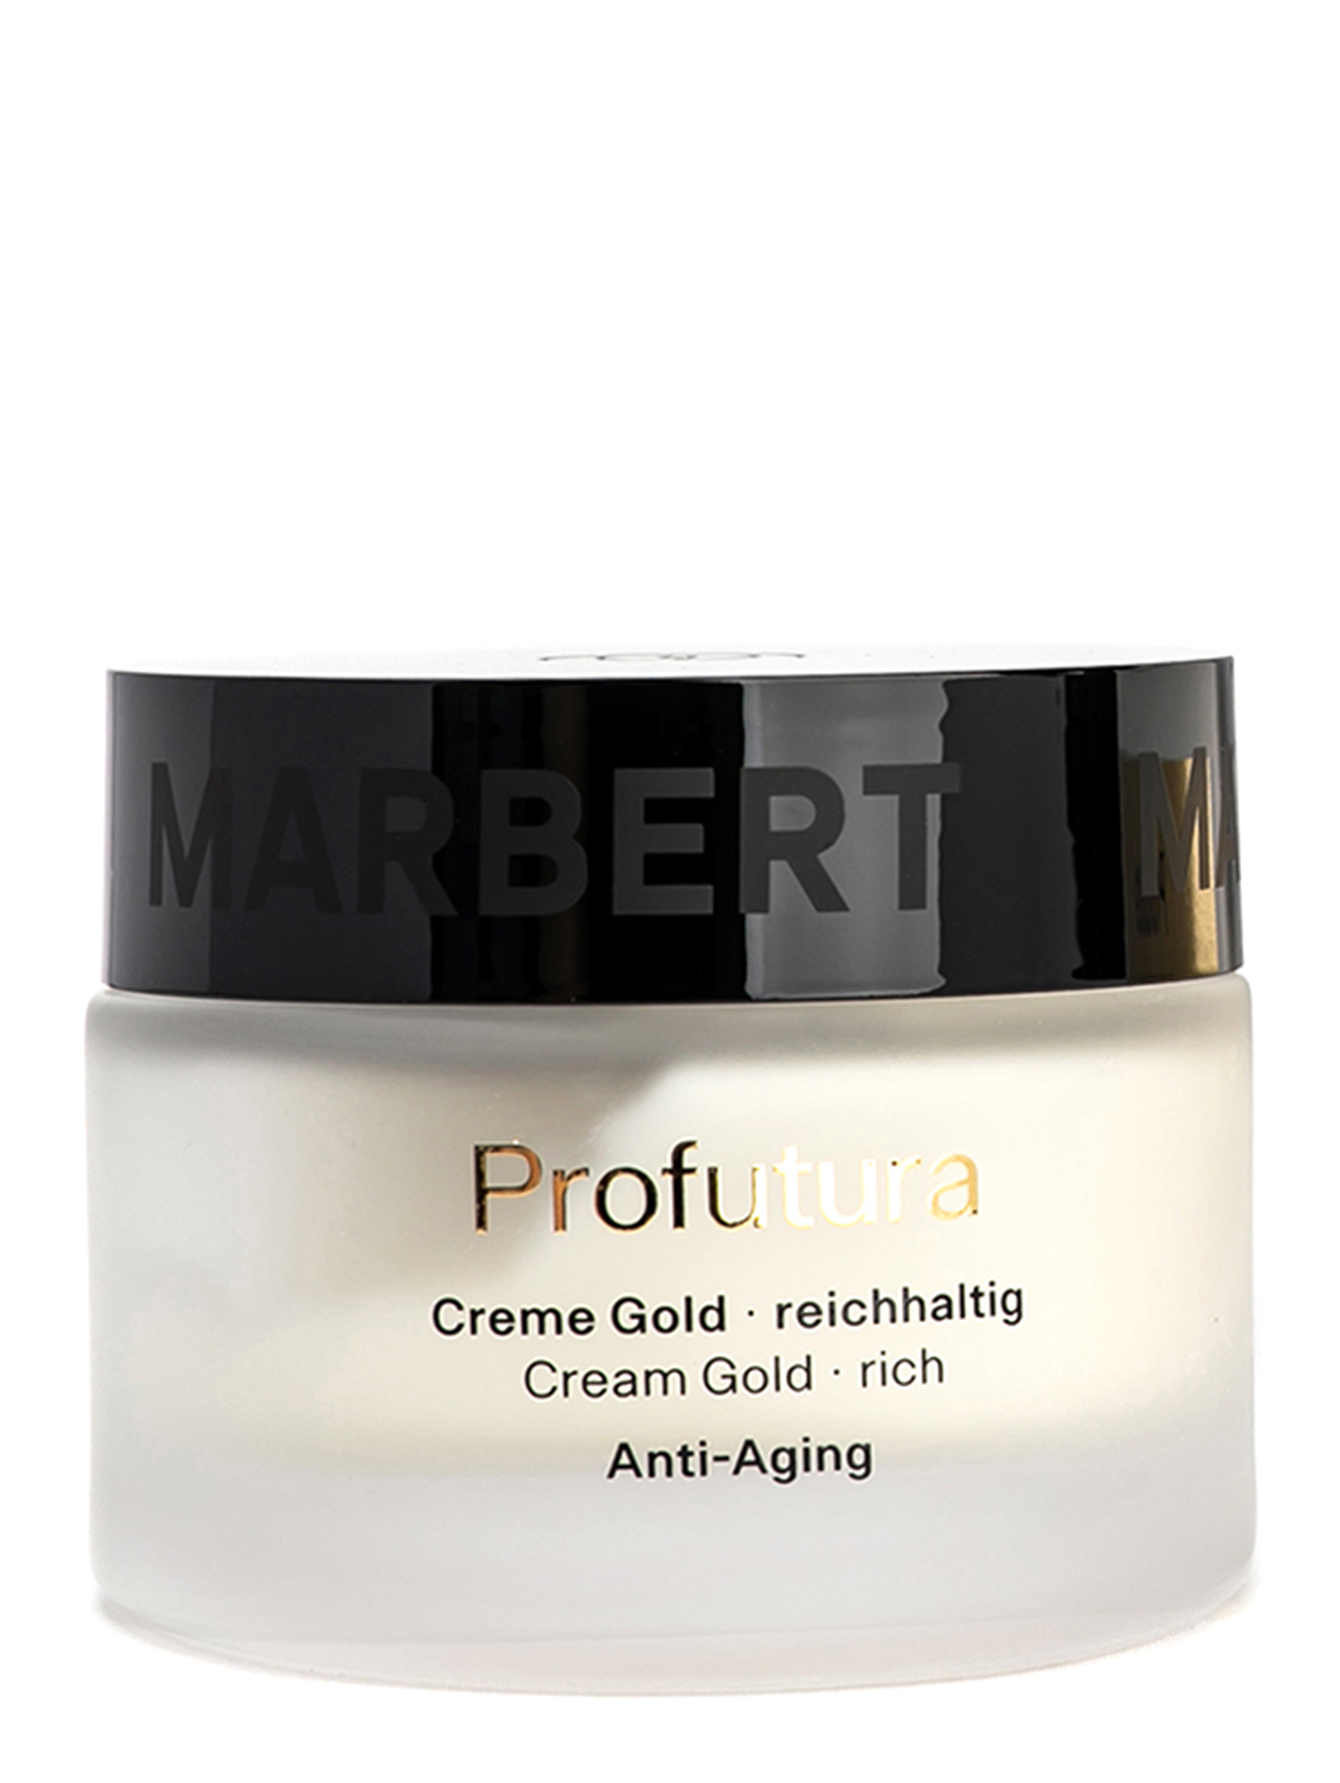 Антивозрастной крем для сухой кожи 45+ Profuturа Anti-Aging Cream Gold, 50 мл - Общий вид